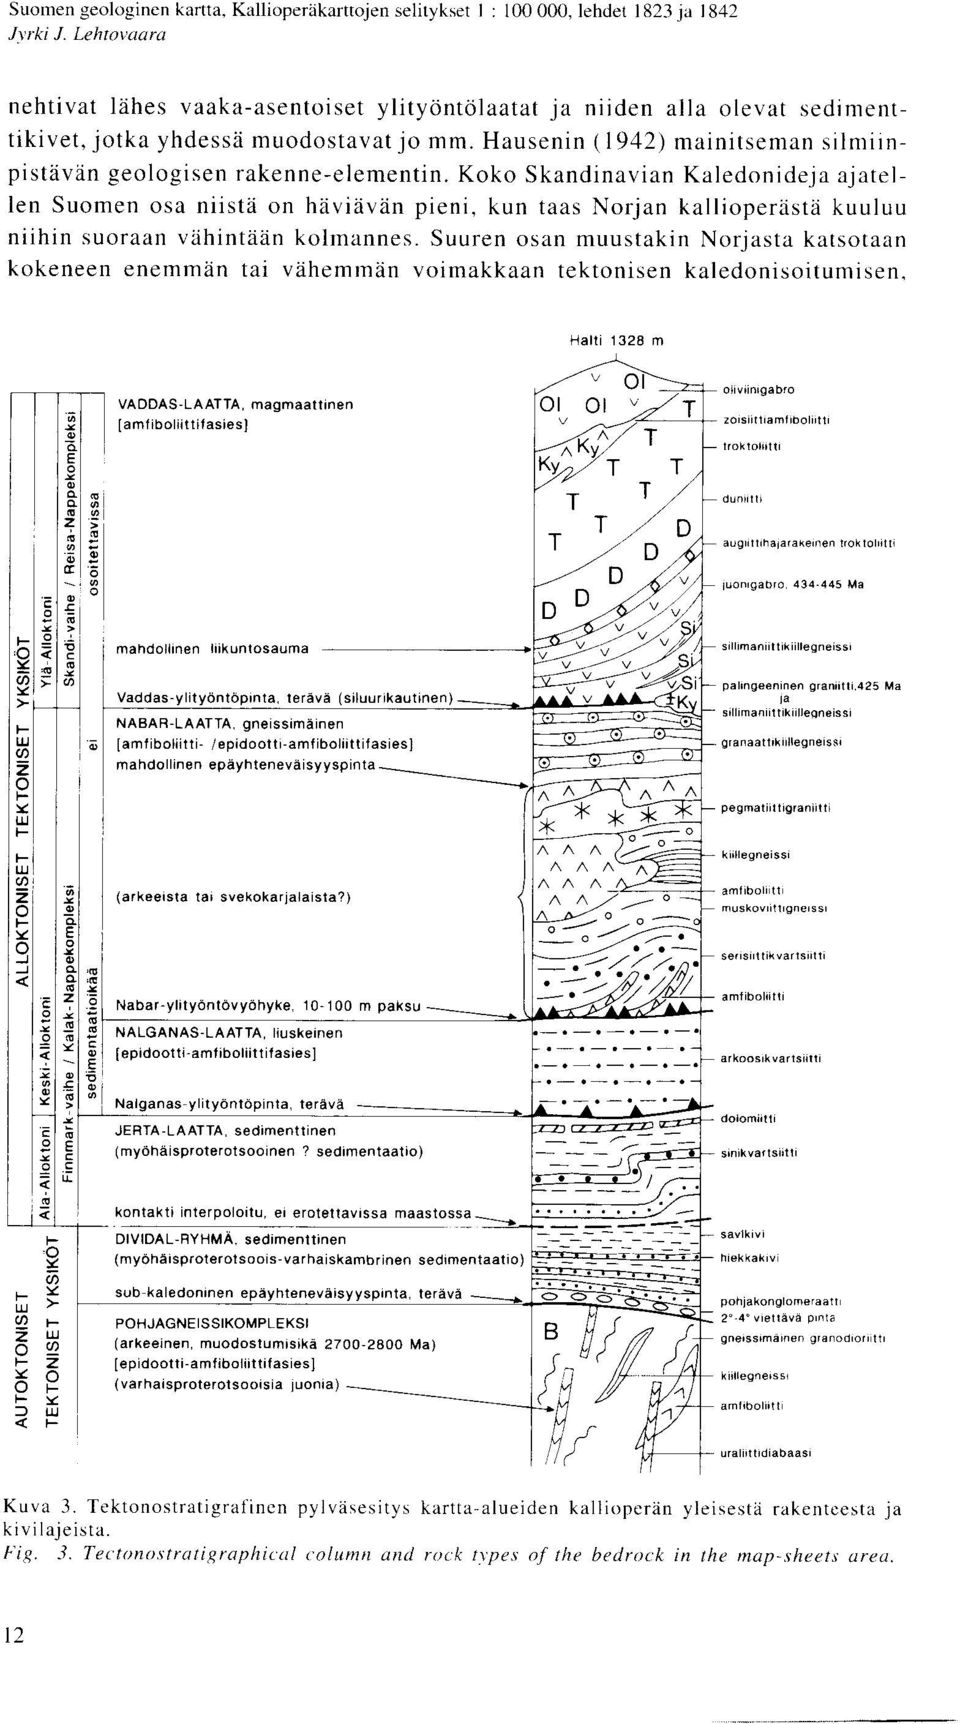 Hausenin (1942) mainitsernan silmiinpistavan geologisen rakenne-elementin.